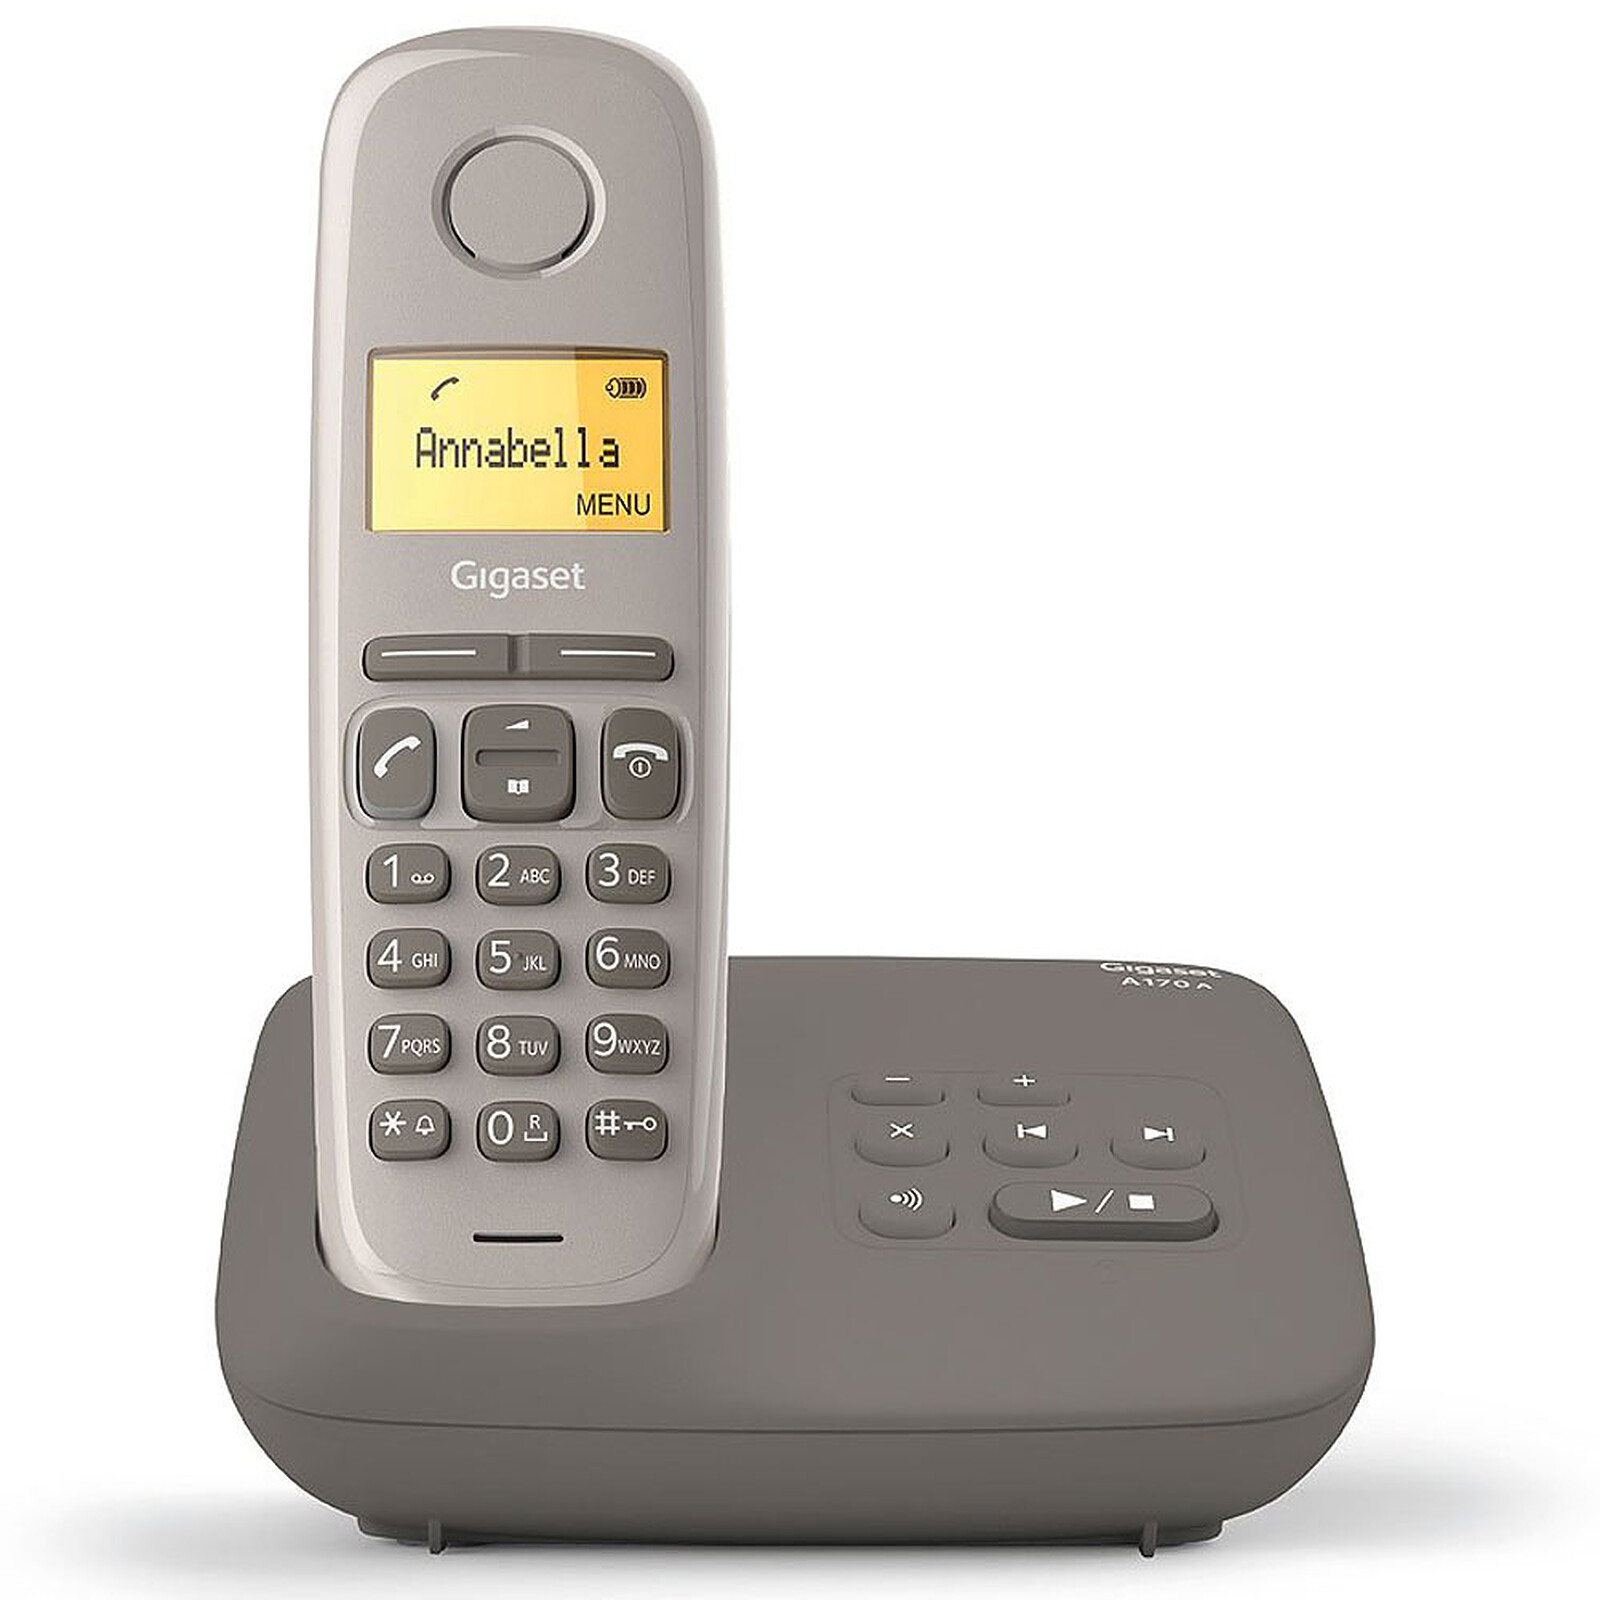 Alcatel XL585 Duo Blanc - Téléphone sans fil - Garantie 3 ans LDLC